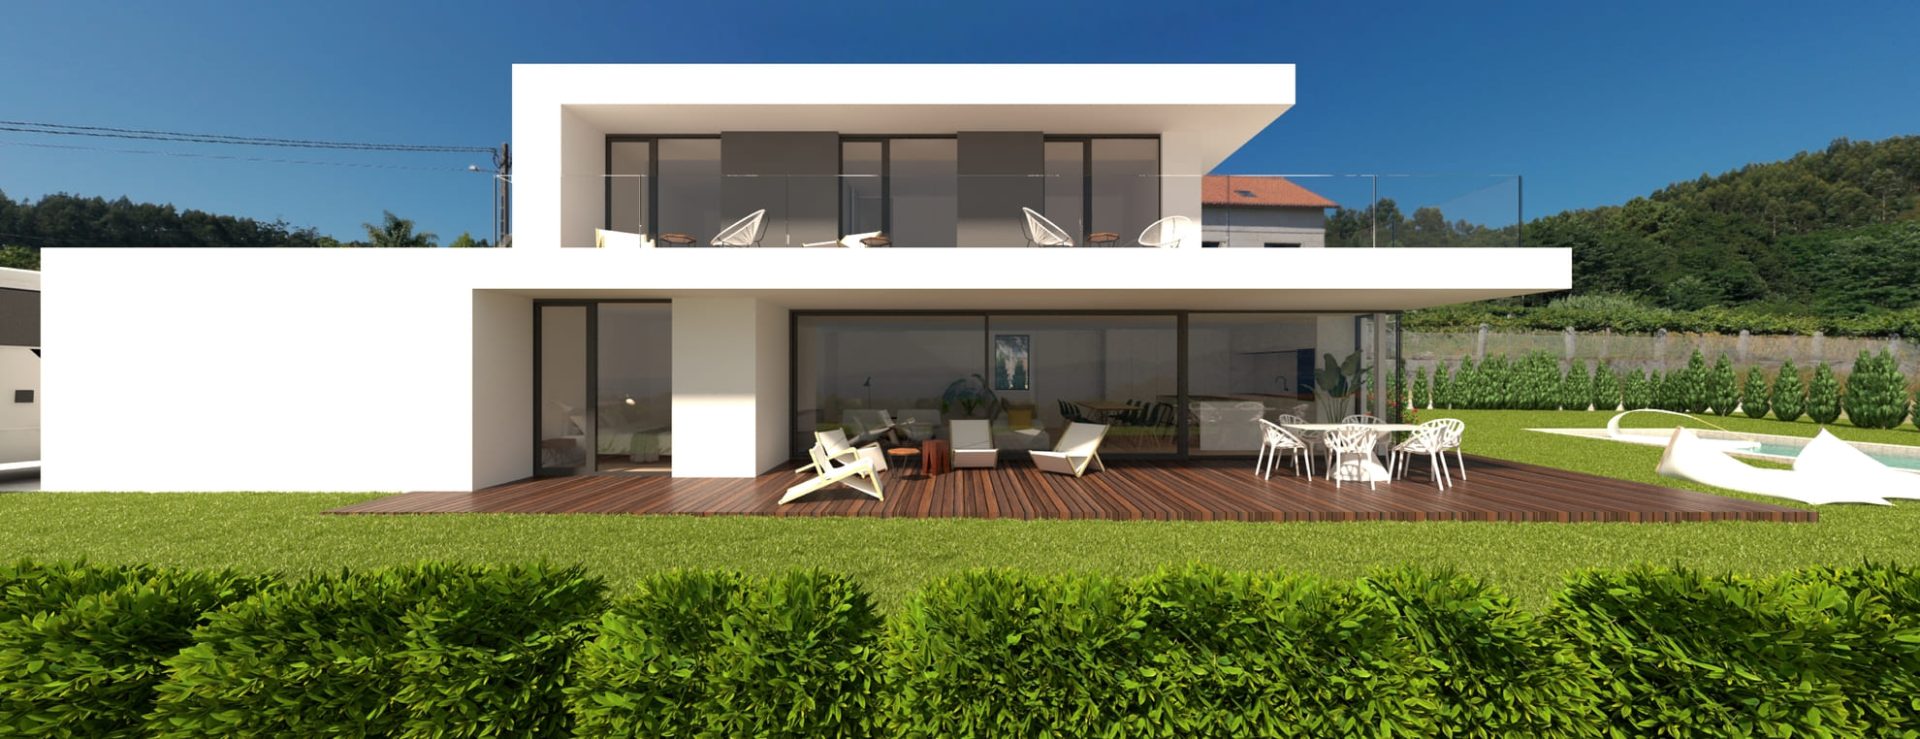 Vivienda de 200m² con piscina en Madrid - LP Construcciones